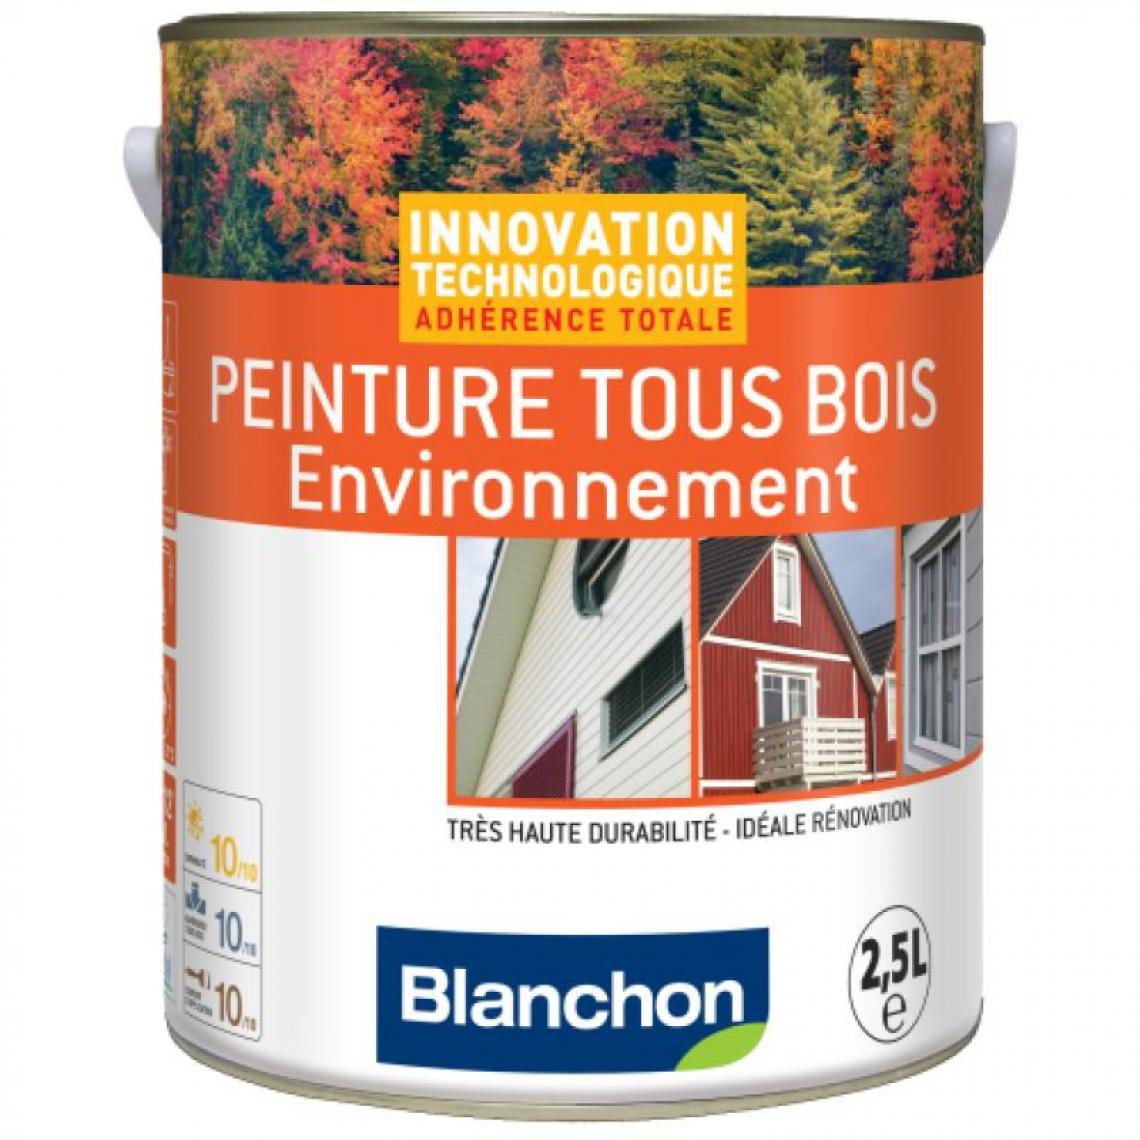 Blanchon - Peinture microporeuse hydrofuge Tous Bois Environnement, rouge basque 3004, - Produit de finition pour bois